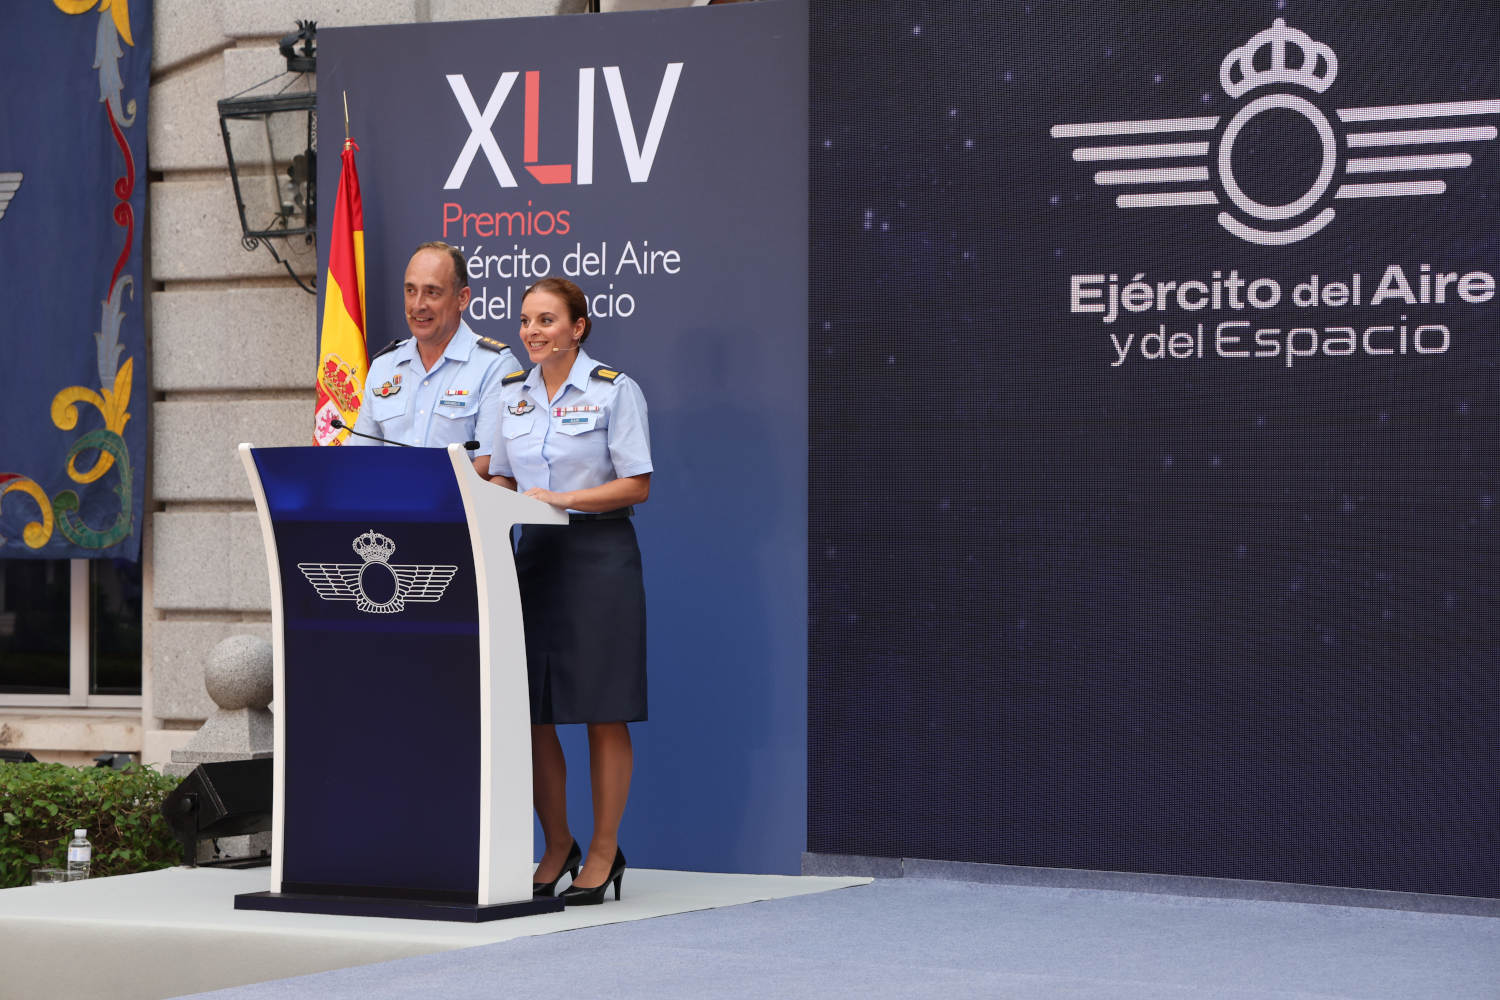 Premios Ejército del Aire y del Espacio disciplina de Modelismo Aeronáutico